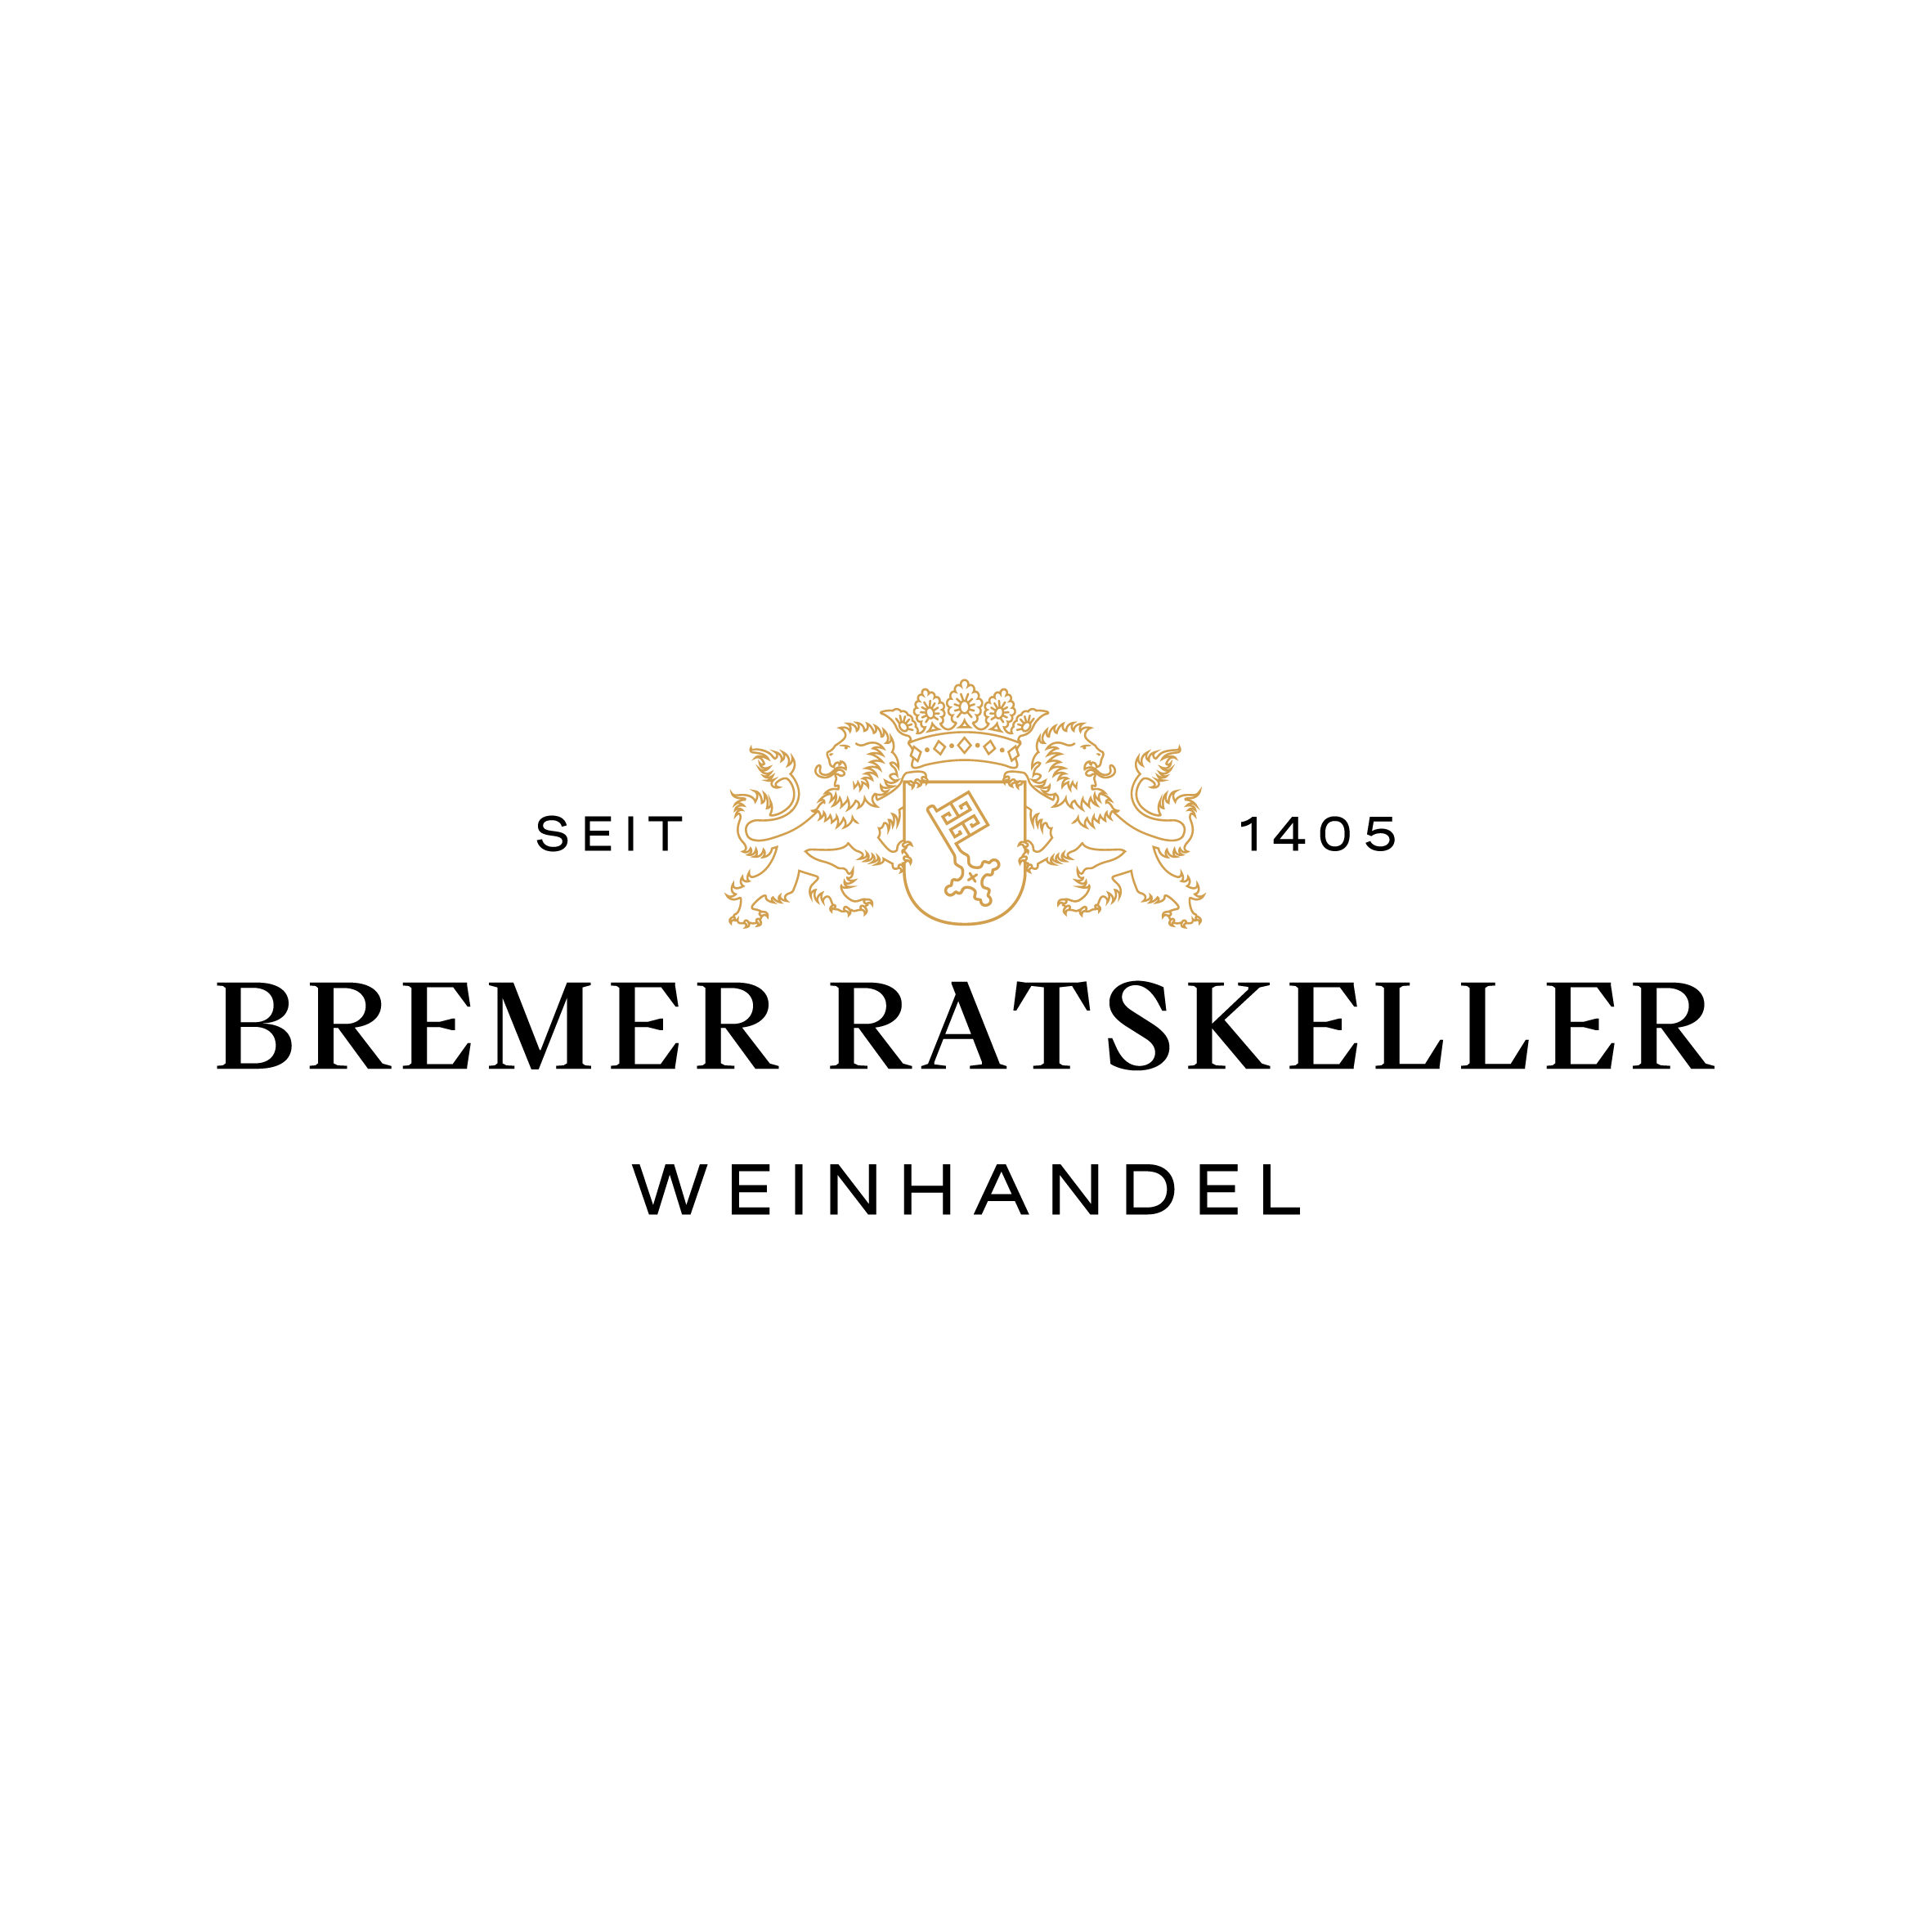 Bremer Ratskeller – Weinhandel seit 1405  